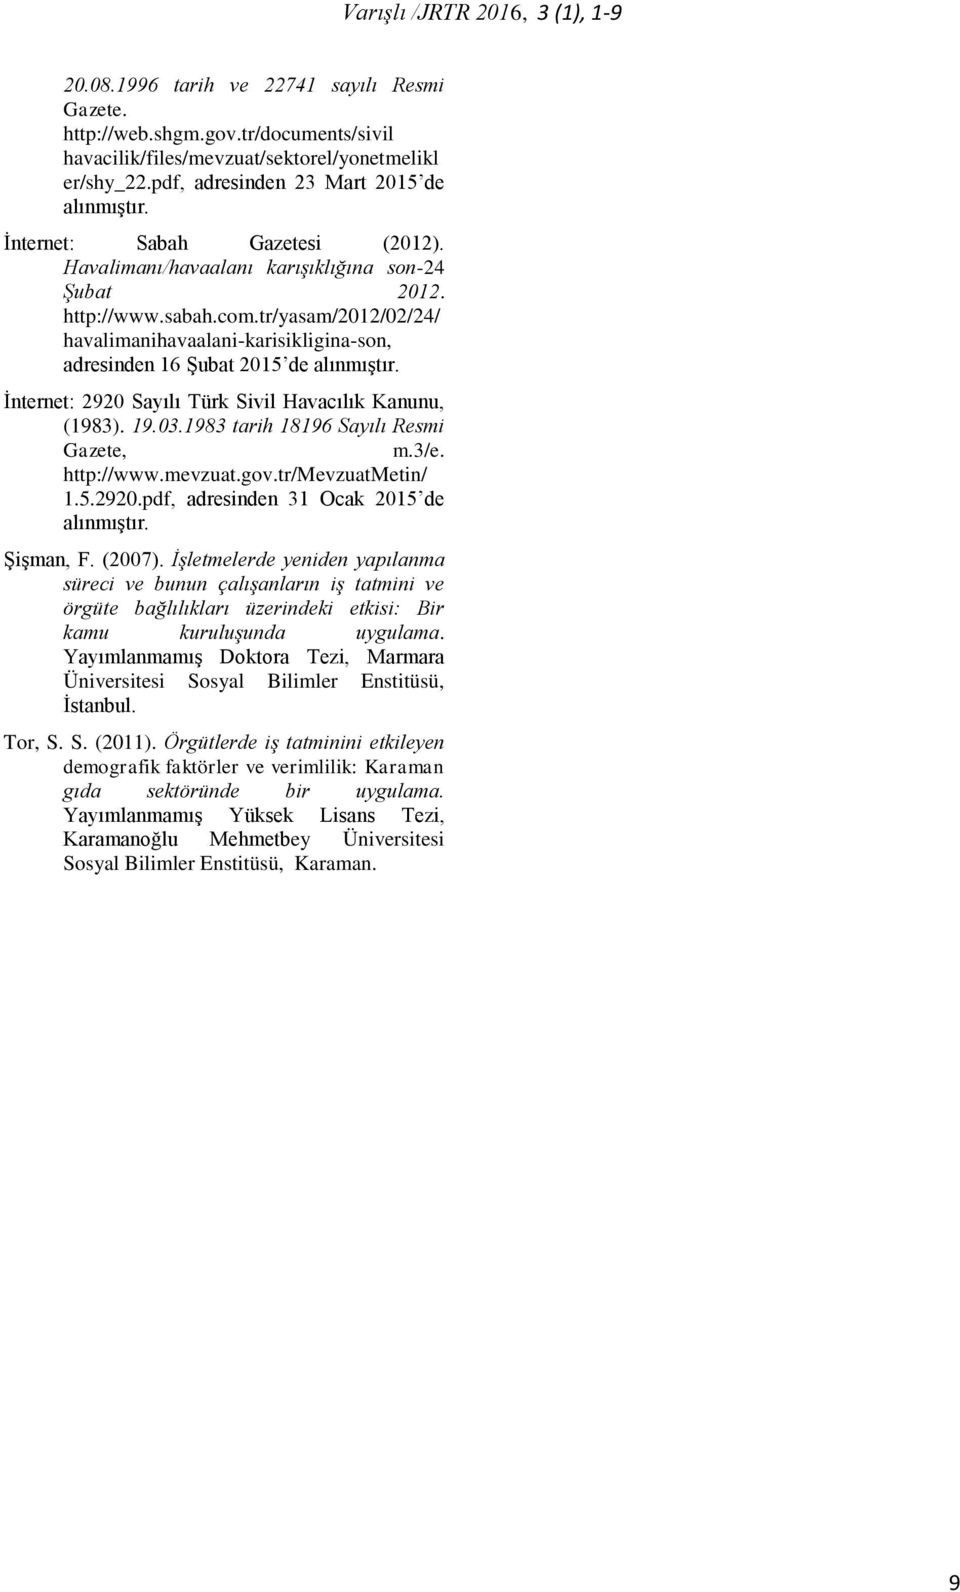 İnternet: 2920 Sayılı Türk Sivil Havacılık Kanunu, (1983). 19.03.1983 tarih 18196 Sayılı Resmi Gazete, m.3/e. http://www.mevzuat.gov.tr/mevzuatmetin/ 1.5.2920.pdf, adresinden 31 Ocak 2015 de alınmıştır.